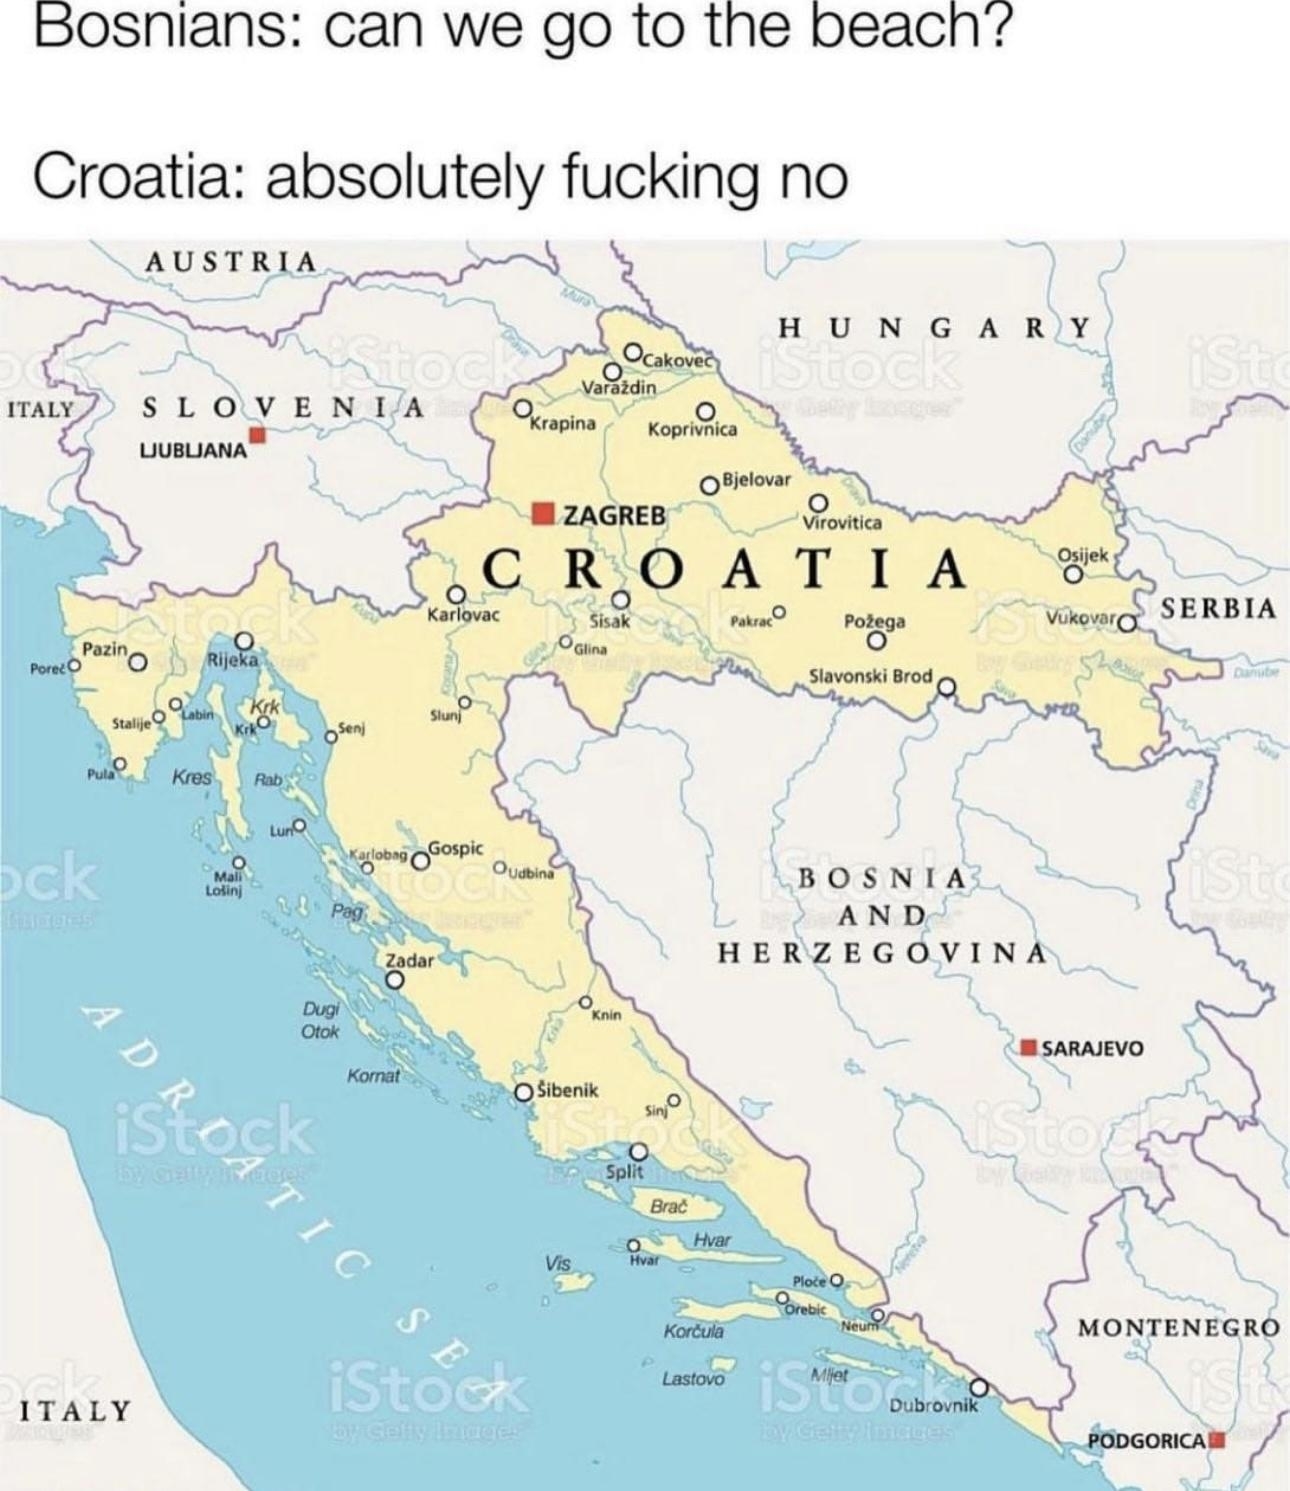 A map of Bosnia